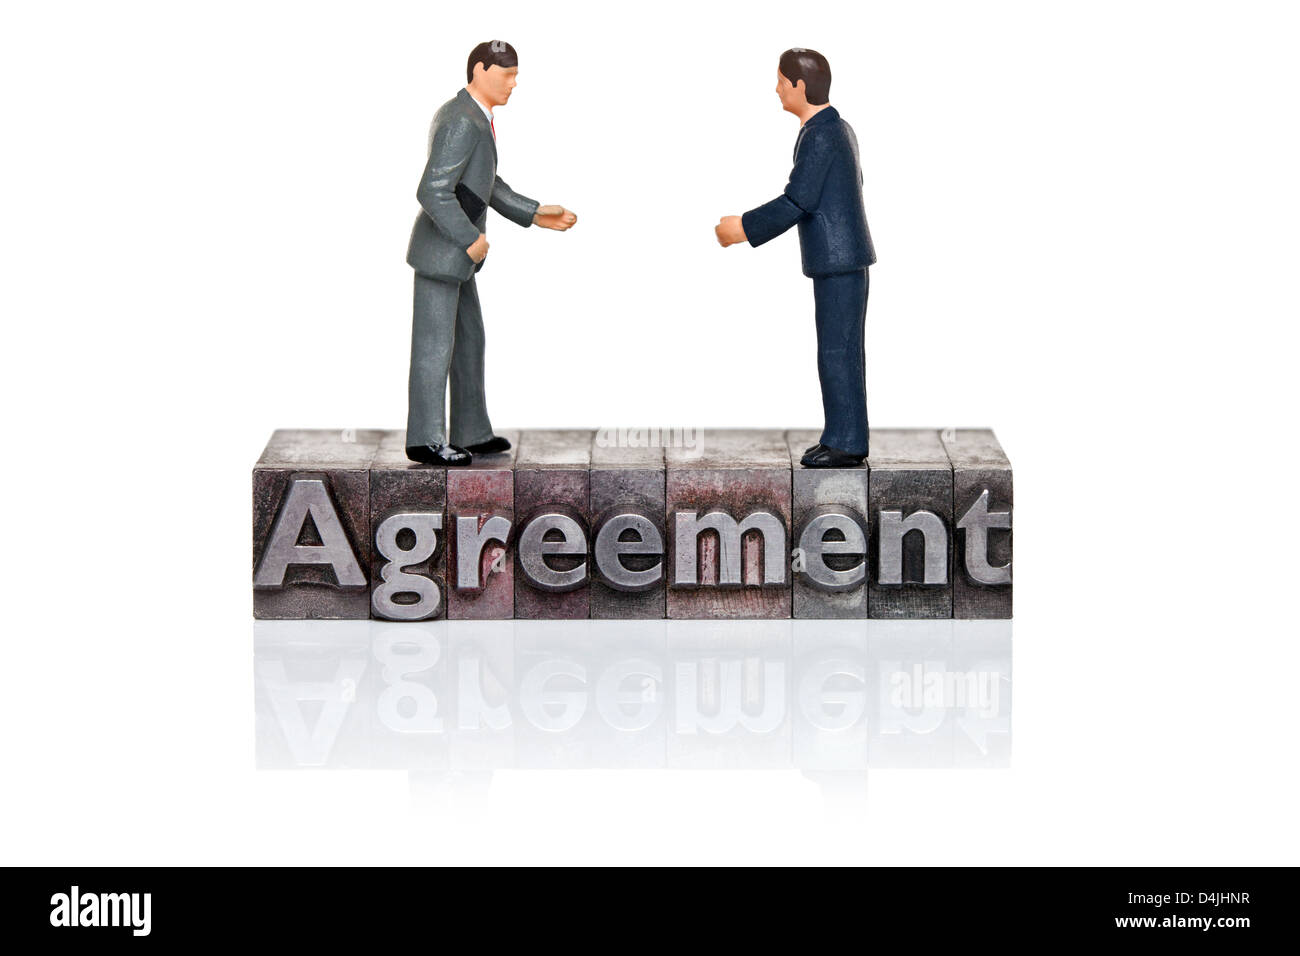 Handgemalte Geschäftsleute Figuren und das Wort Vereinbarung in alten Metall Buchdruck isoliert auf einem weißen Hintergrund. Stockfoto